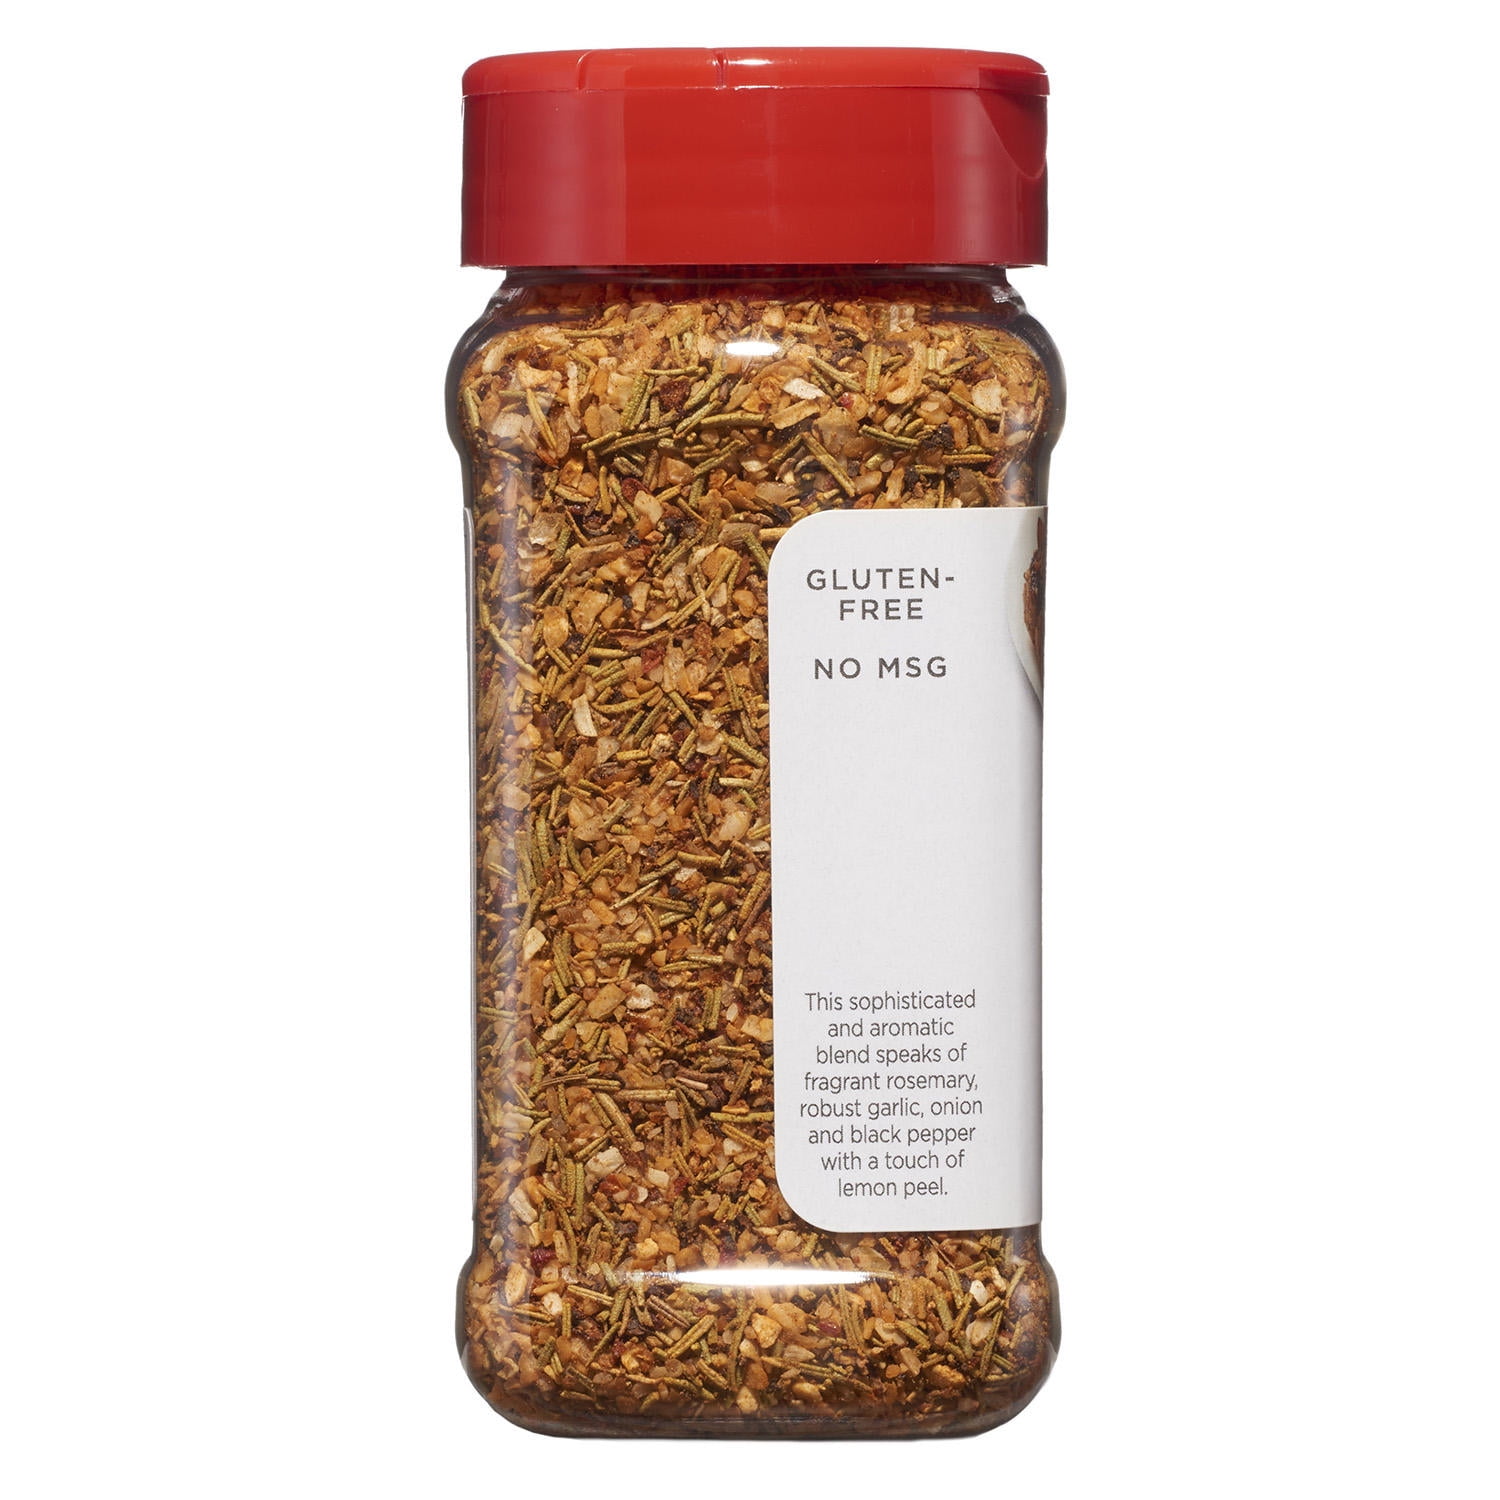 Tone's Garlic & Herb Seasoning Blend - 2.5 oz